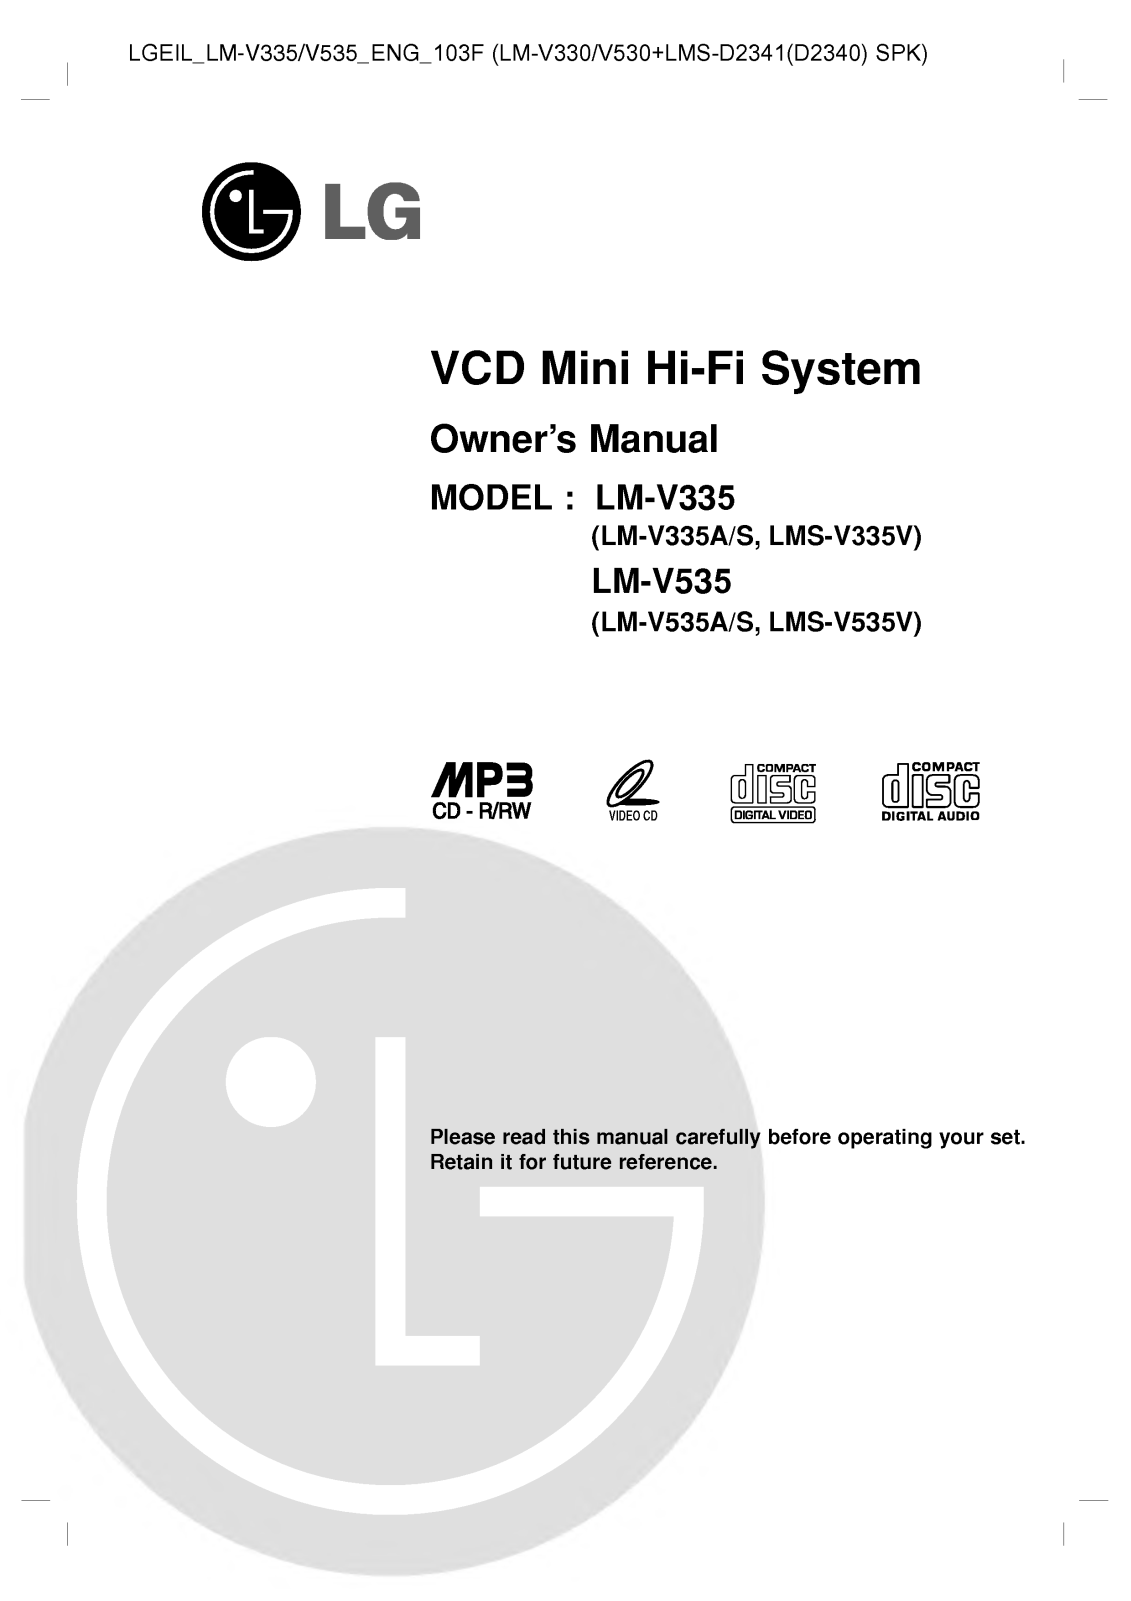 LG LM-V535A, LM-V335A User Manual